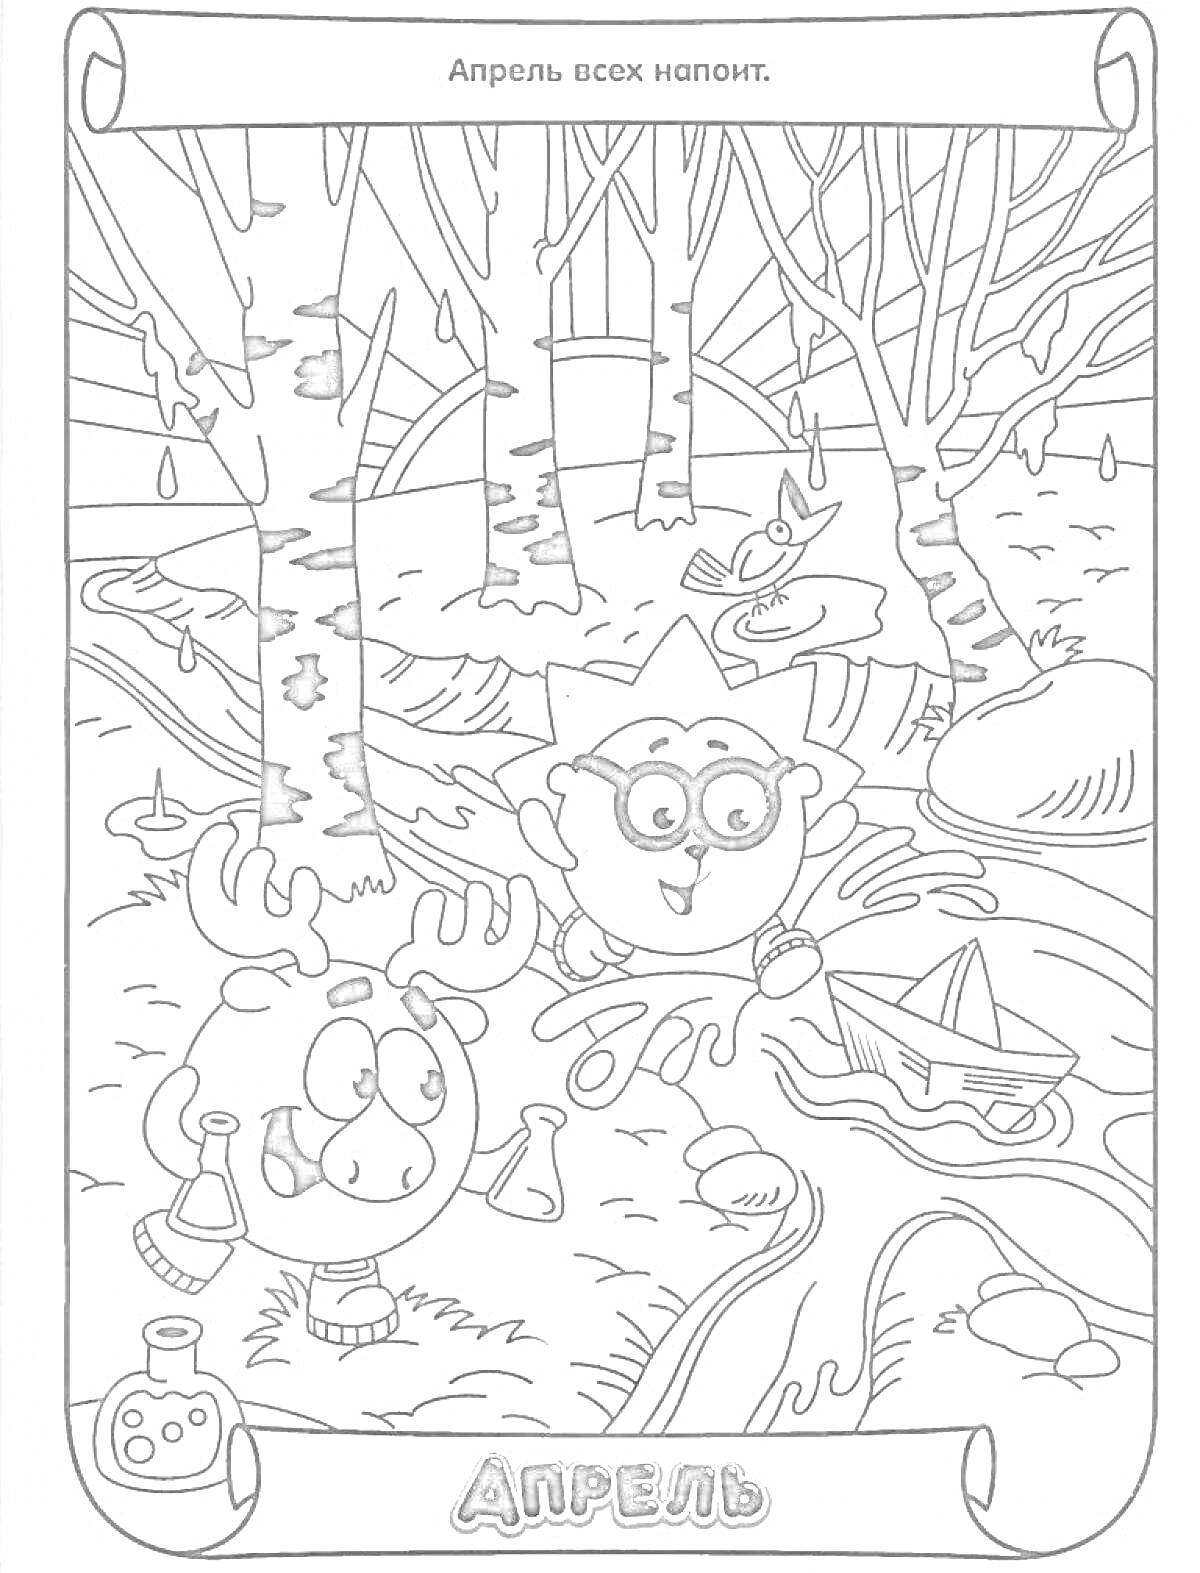 Два персонажа гуляют весной, с лужами, бутылочками, спасательным кругом и лодкой на озере в окружении деревьев и березки.